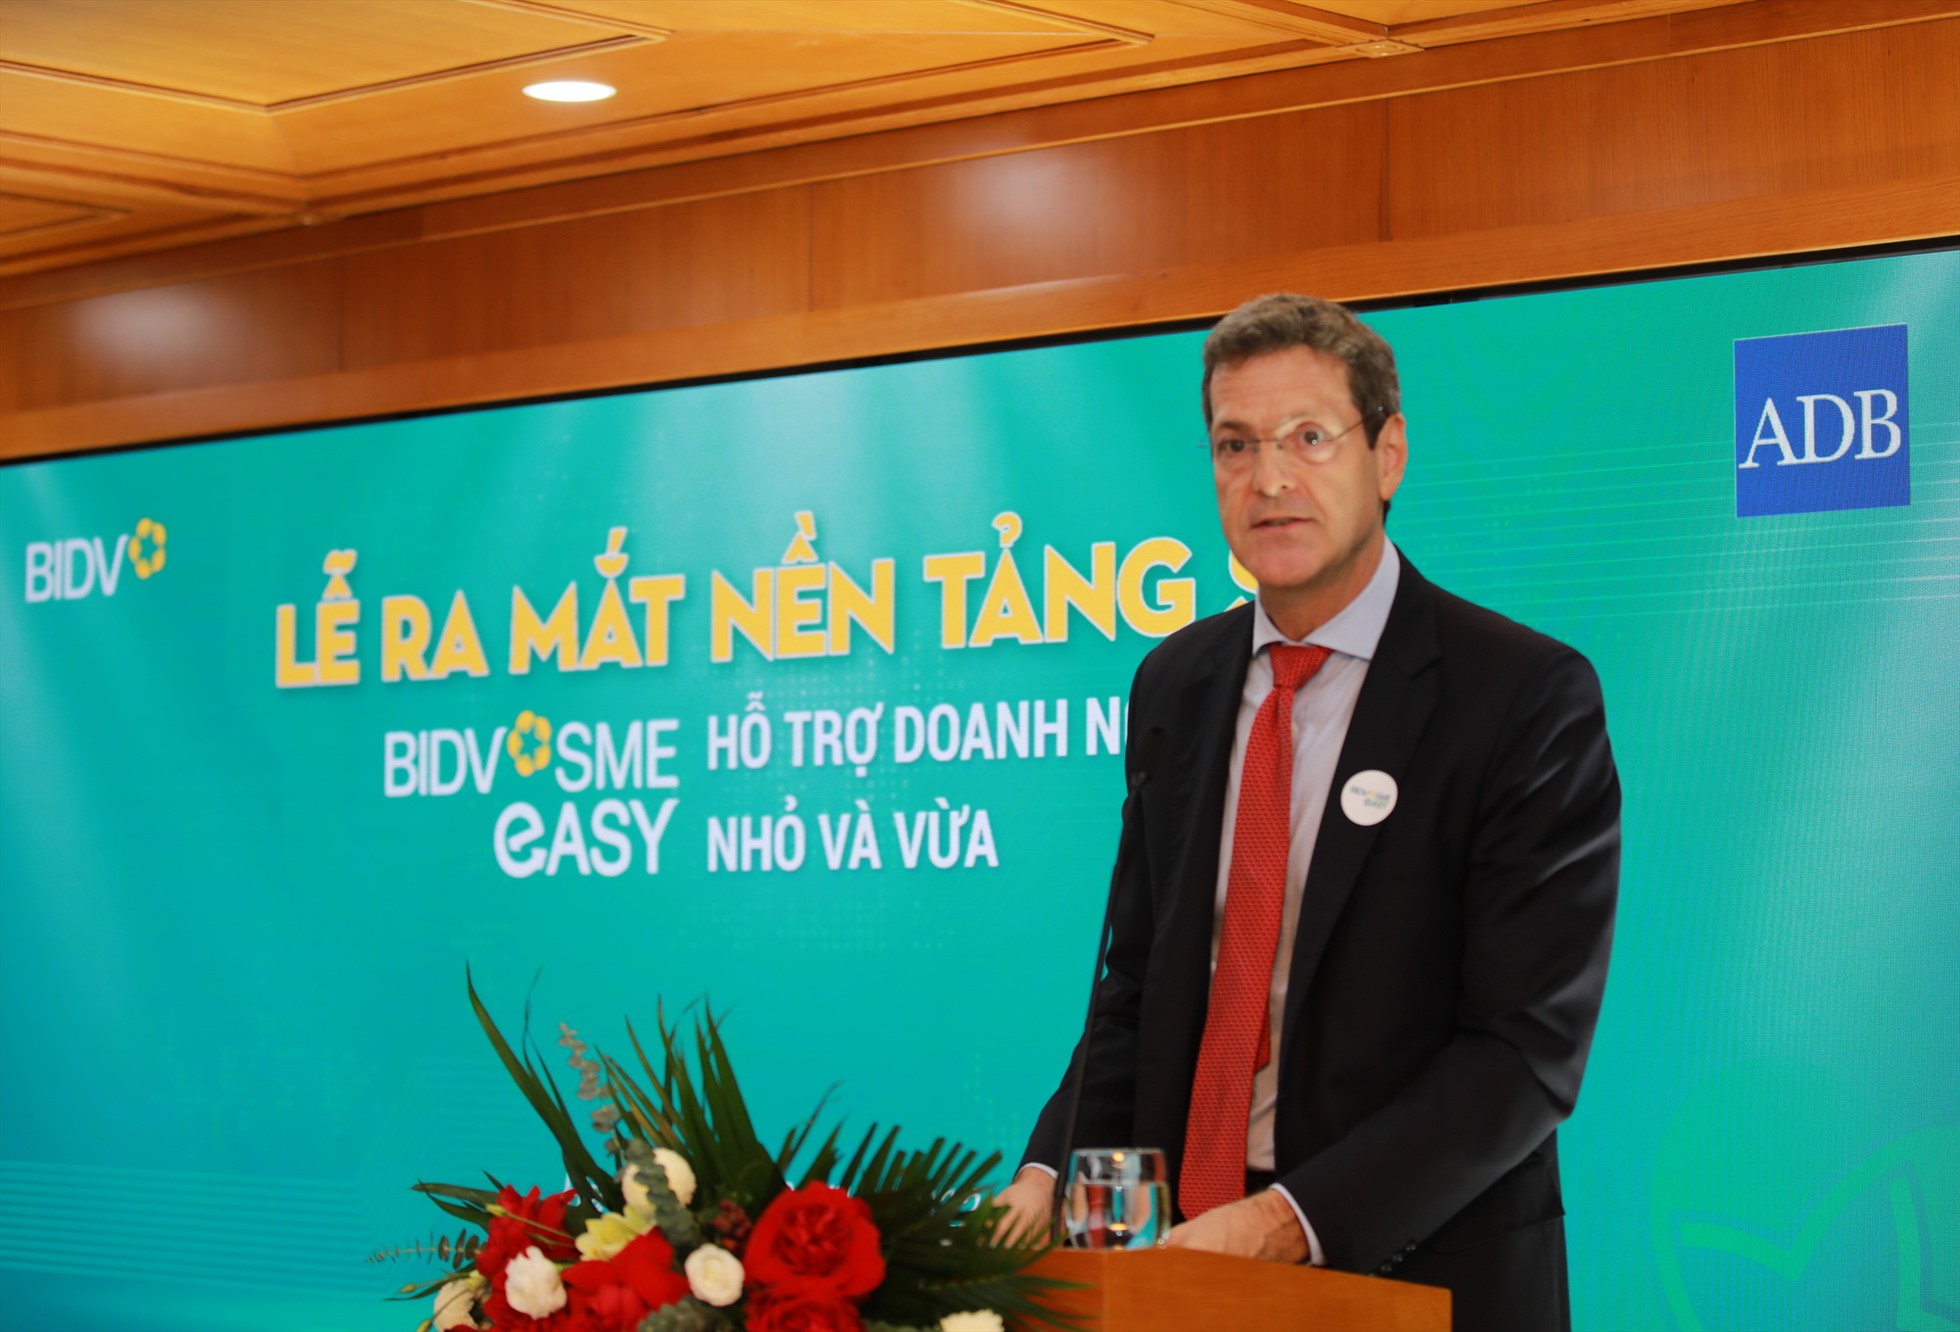 Ông Andrew Jeffries – Giám đốc Quốc gia Ngân hàng Phát triển Châu Á (ADB) tại Việt Nam, chia sẻ về dự án hỗ trợ kỹ thuật Phát triển DNNVV và quá trình hợp tác với BIDV.